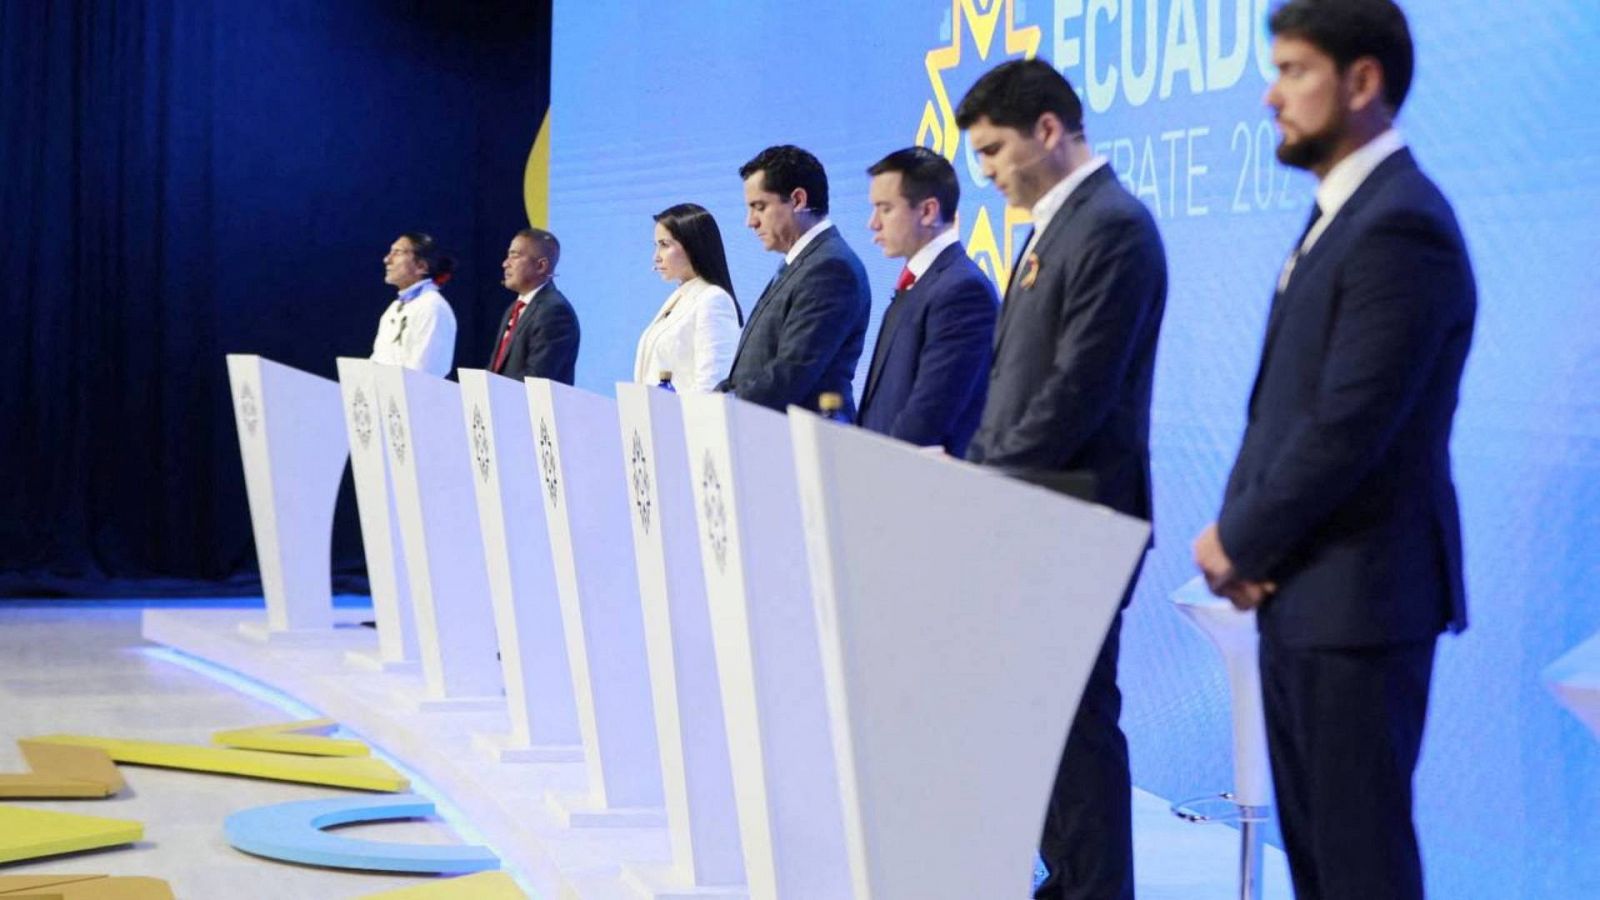 Los candidatos a la Presidencia de Ecuador guardan un minuto de silencio por Fernando Villavicencio al comienzo del debate electoral del pasado domingo, 13 de agosto. Foto: Consejo Nacional Electoral, vía Reuters.